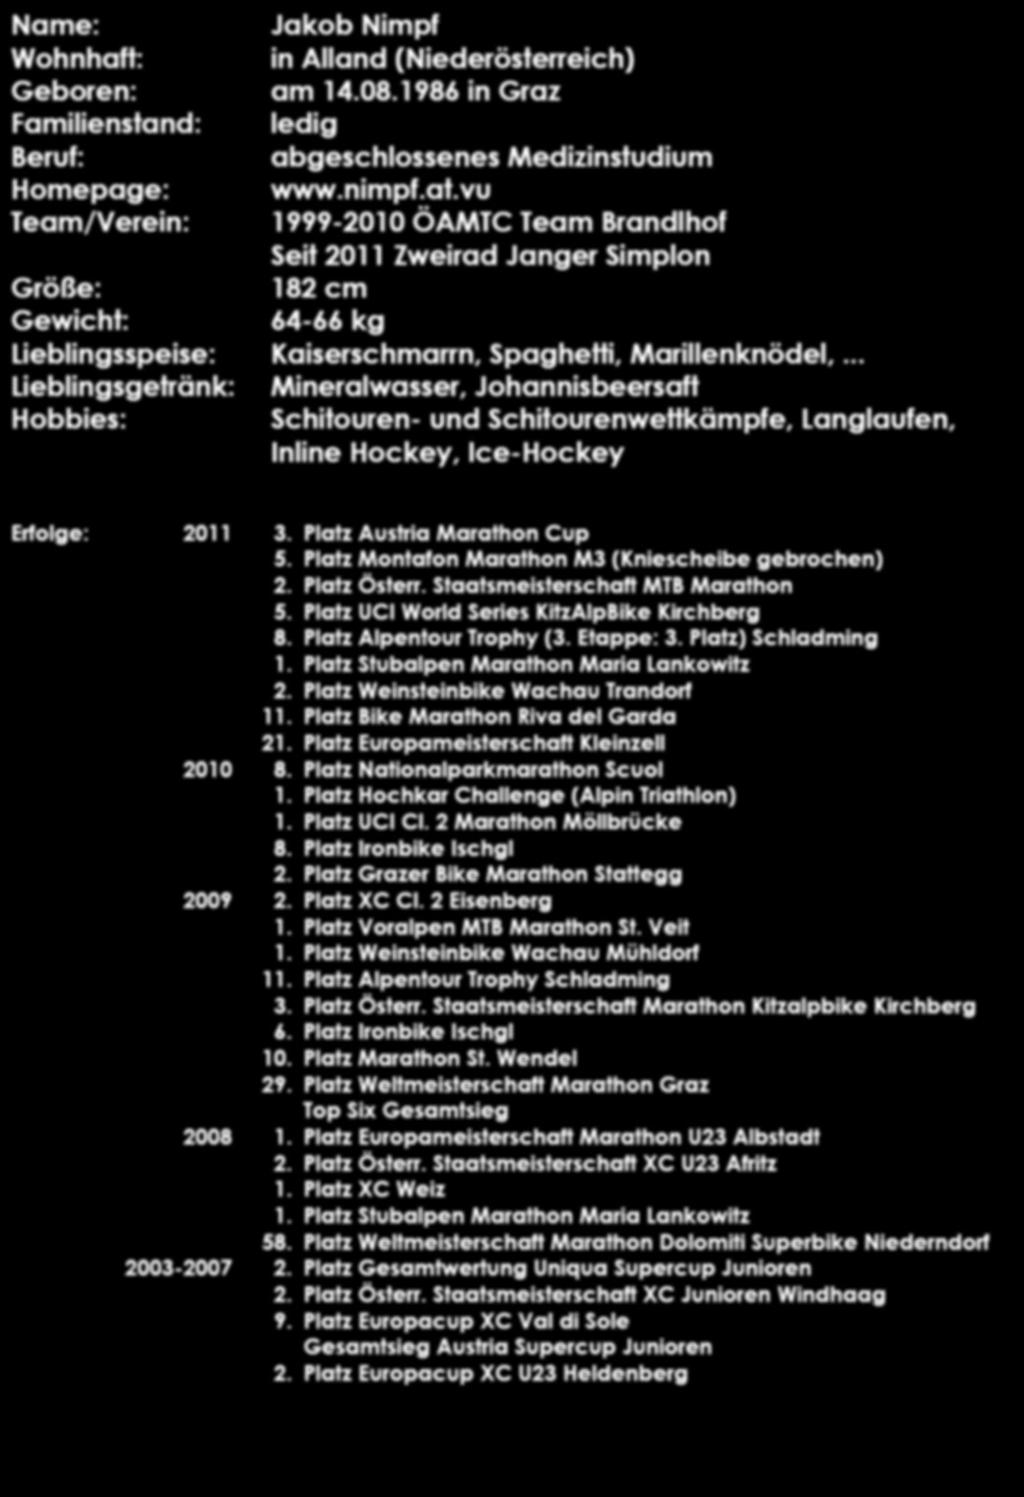 Name: Jakob Nimpf Wohnhaft: in Alland (Niederösterreich) Geboren: am 14.08.1986 in Graz Familienstand: ledig Beruf: abgeschlossenes Medizinstudium Homepage: www.nimpf.at.